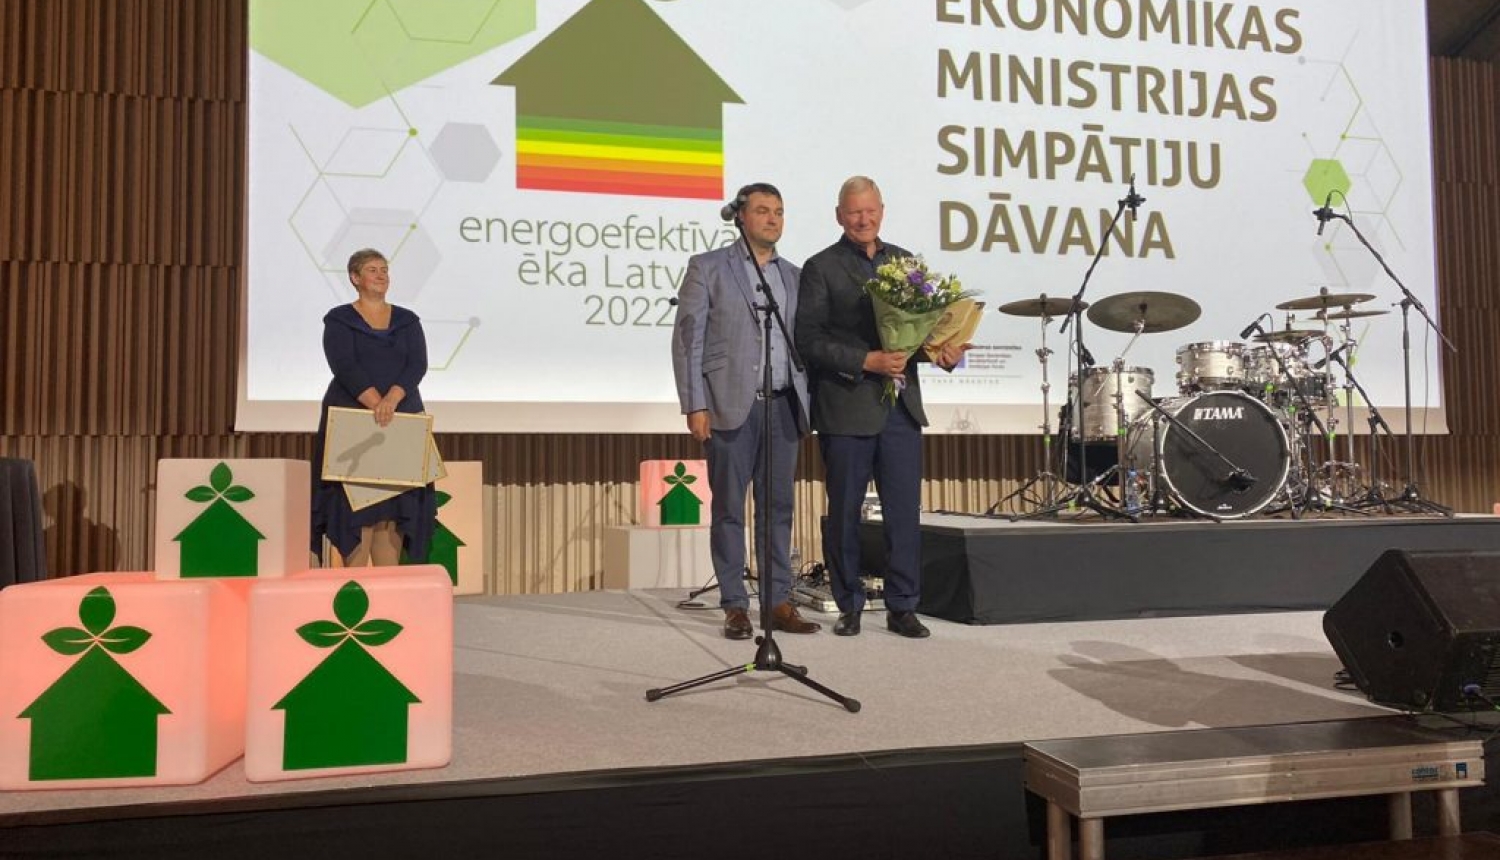 Energoefektīvākā ēka Latvijā 2022” laureāts